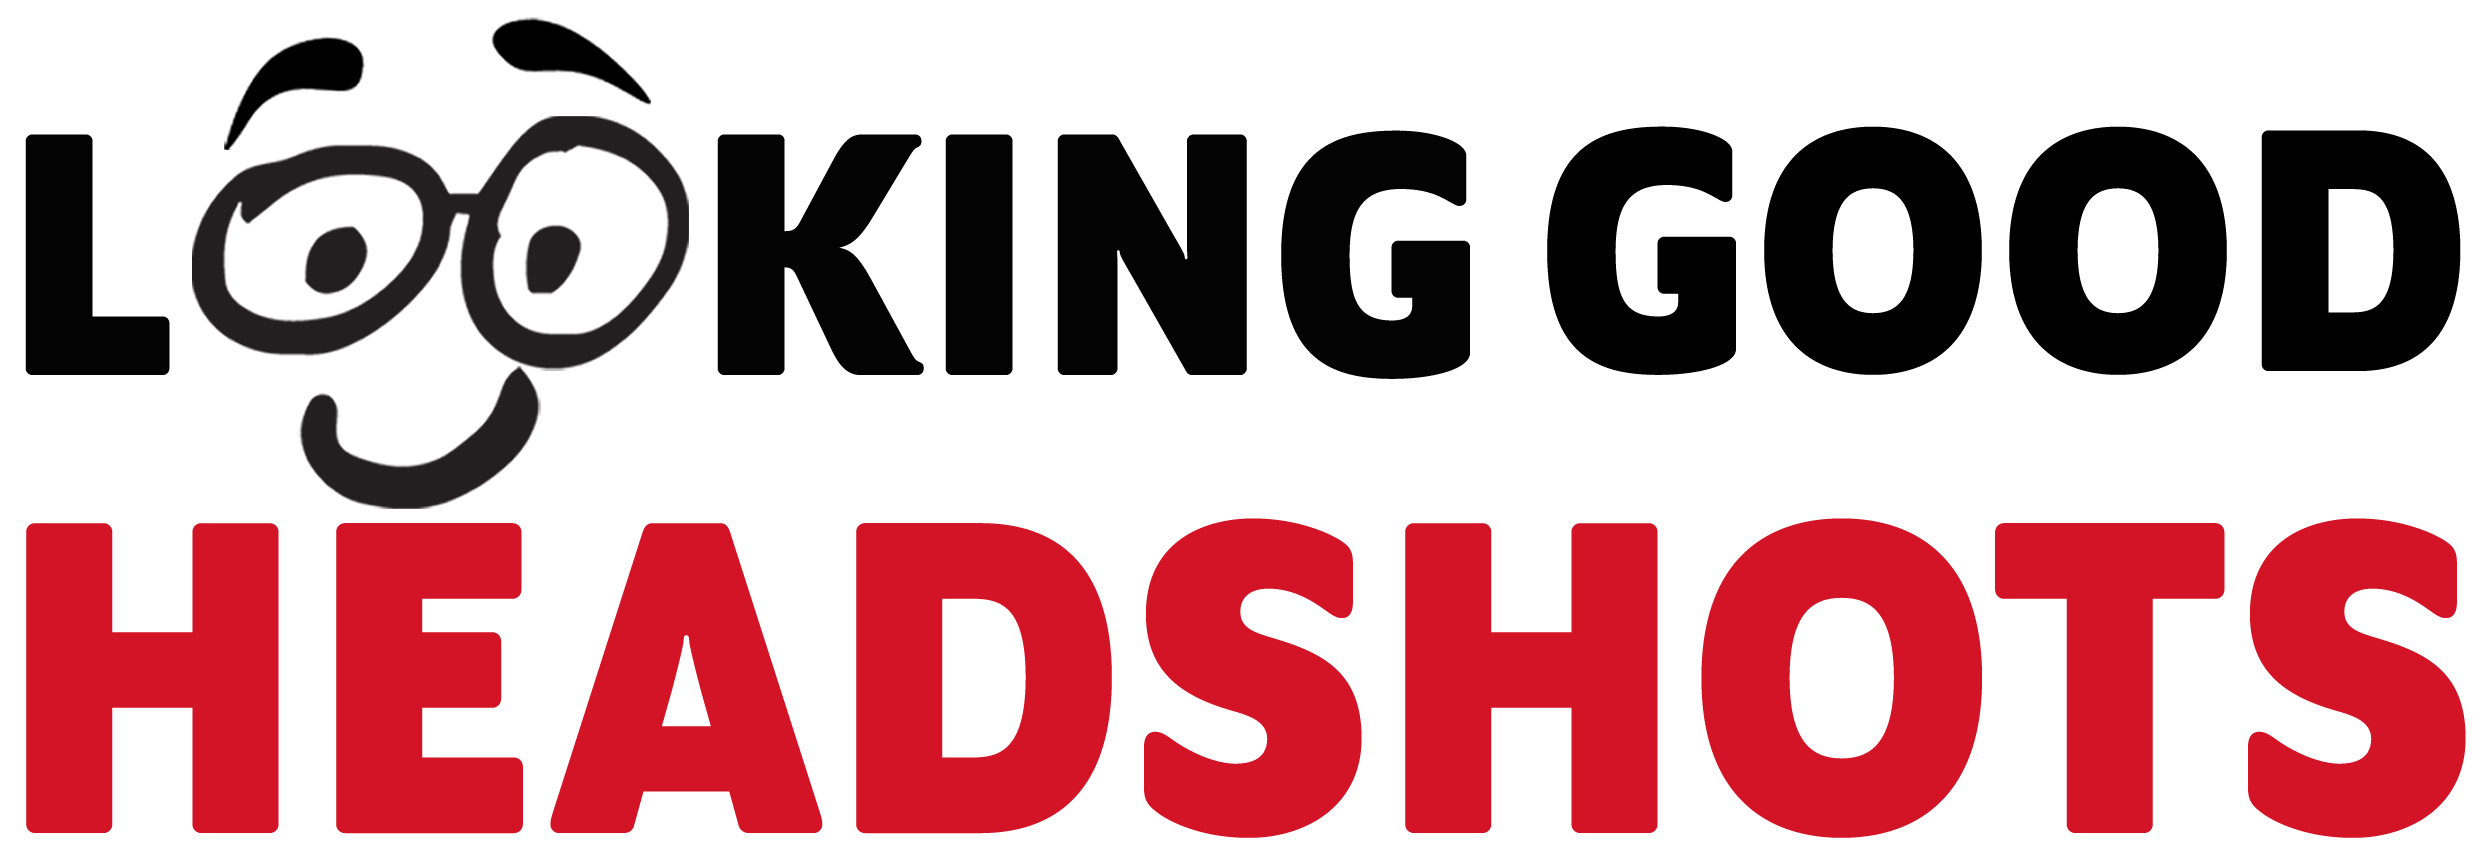 headshot photographer logo